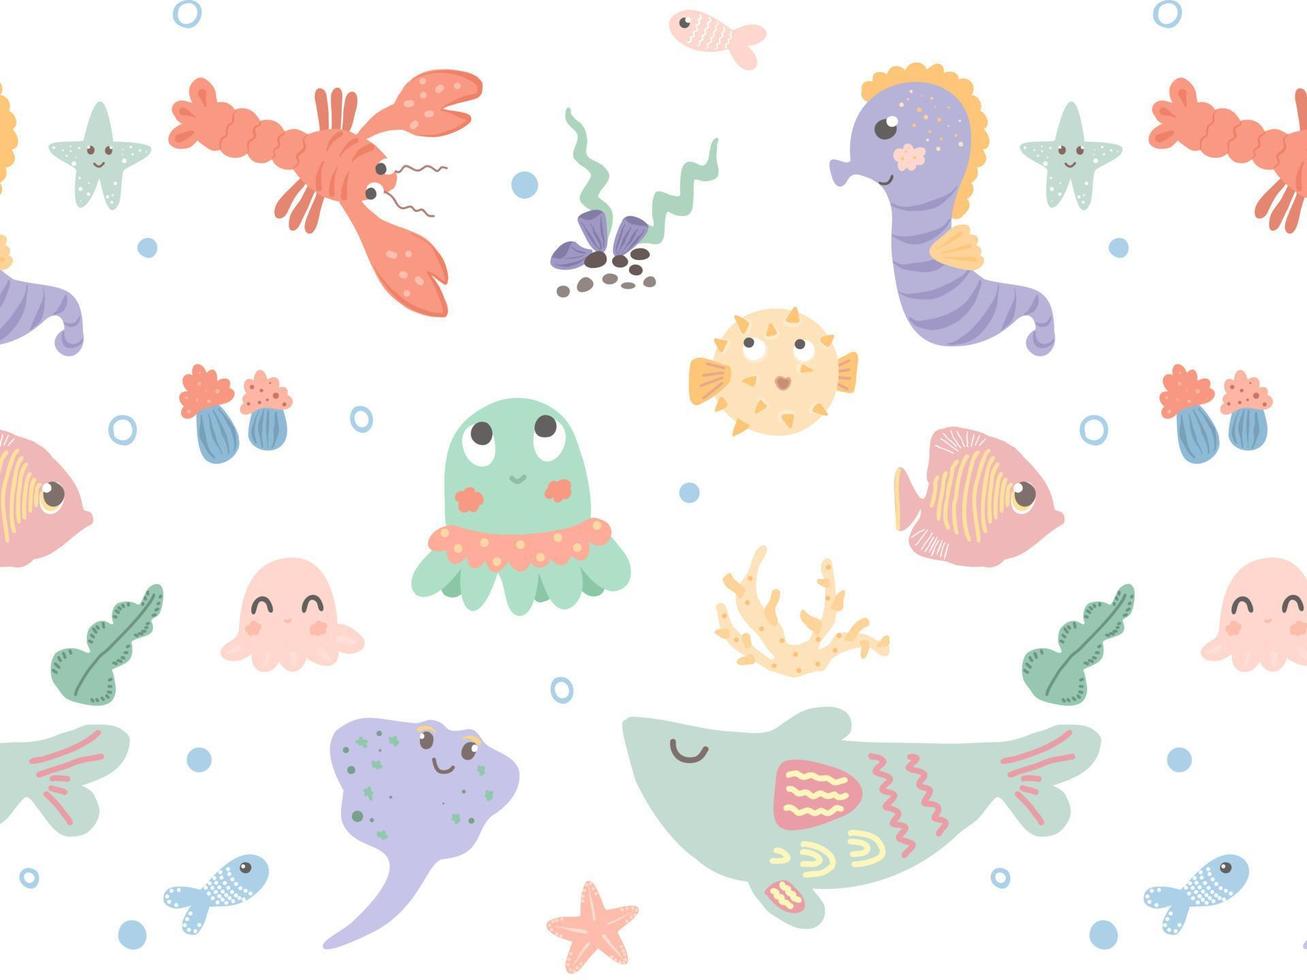 undervattensvärldsmönster. tecknade undervattensfigurer. val, fisk, sjöstjärna, bläckfisk. handritat mönster för barntextilier, tapeter, tyger. vektor